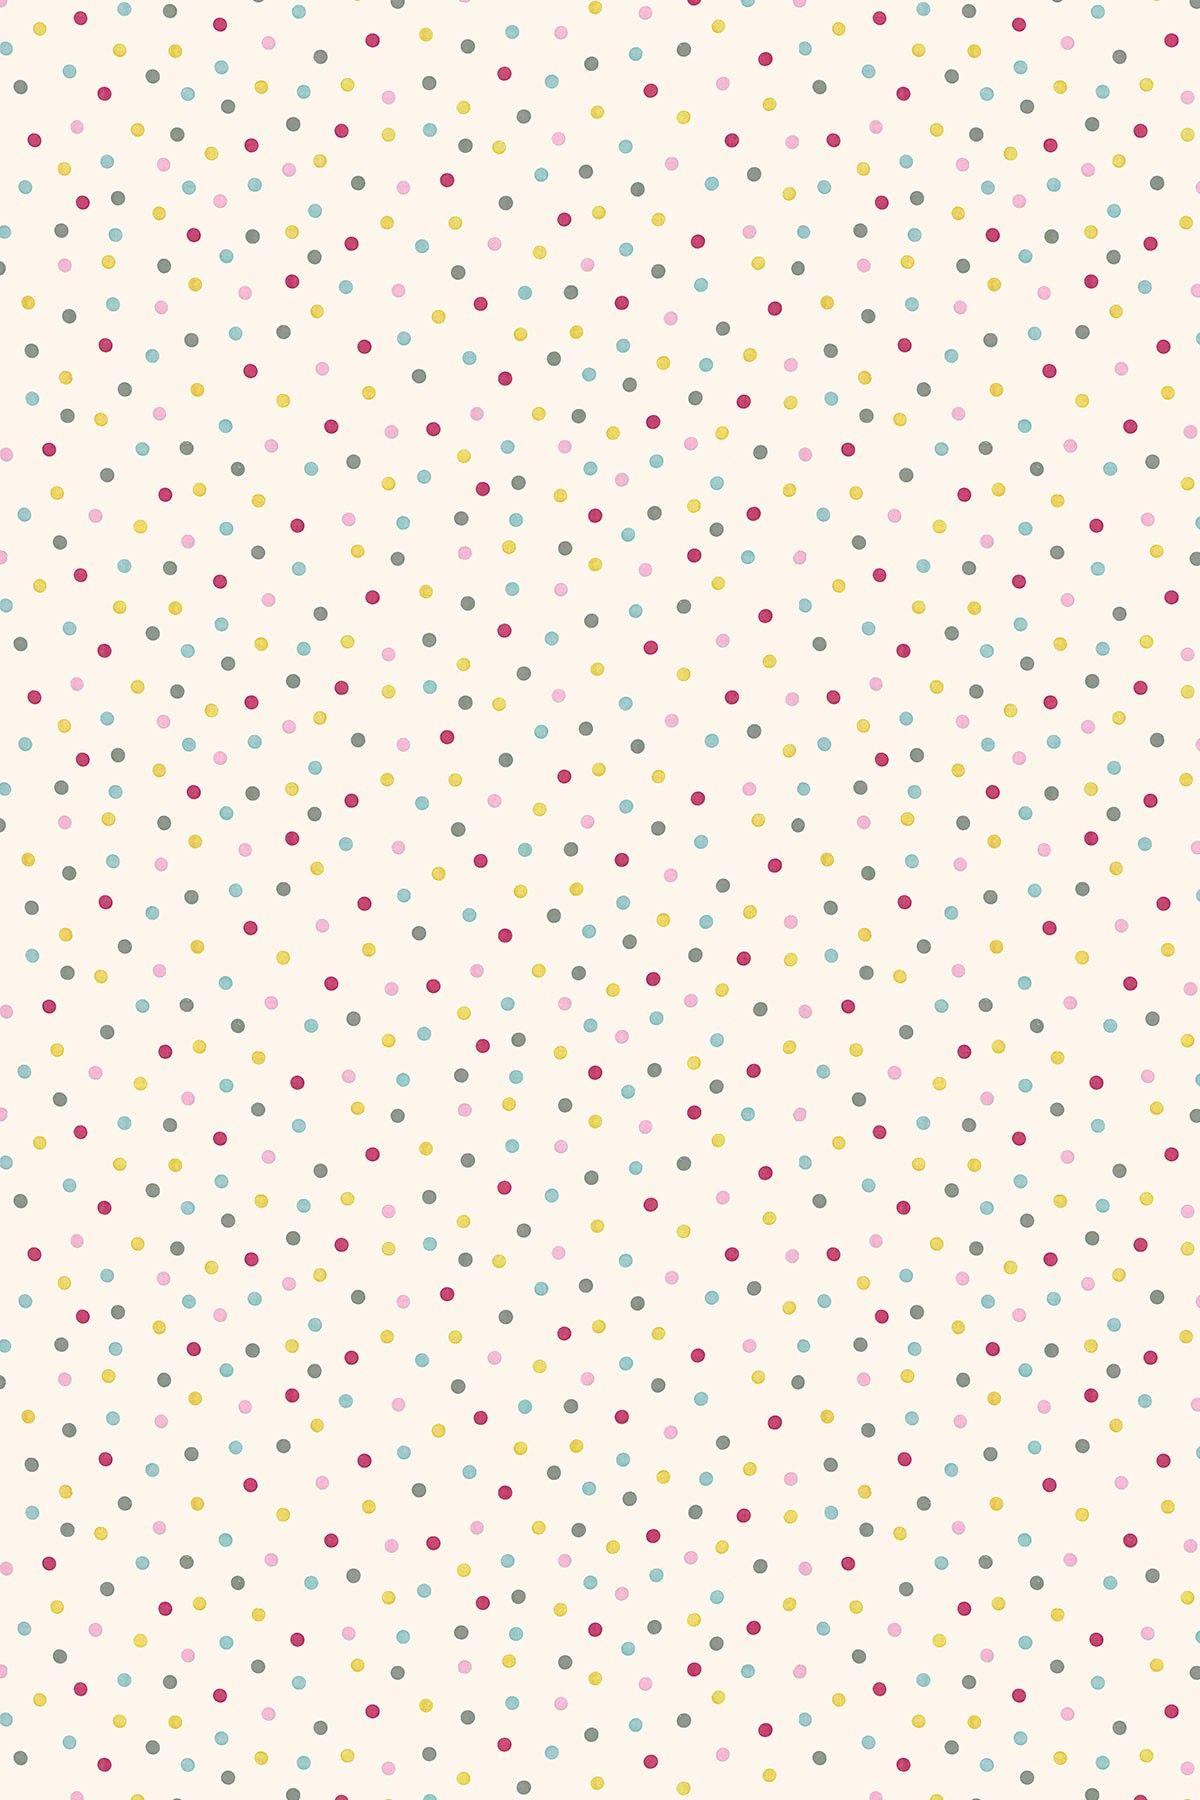 Pink Polka Dots Wallpapers : Choose from 960+ polka dots graphic